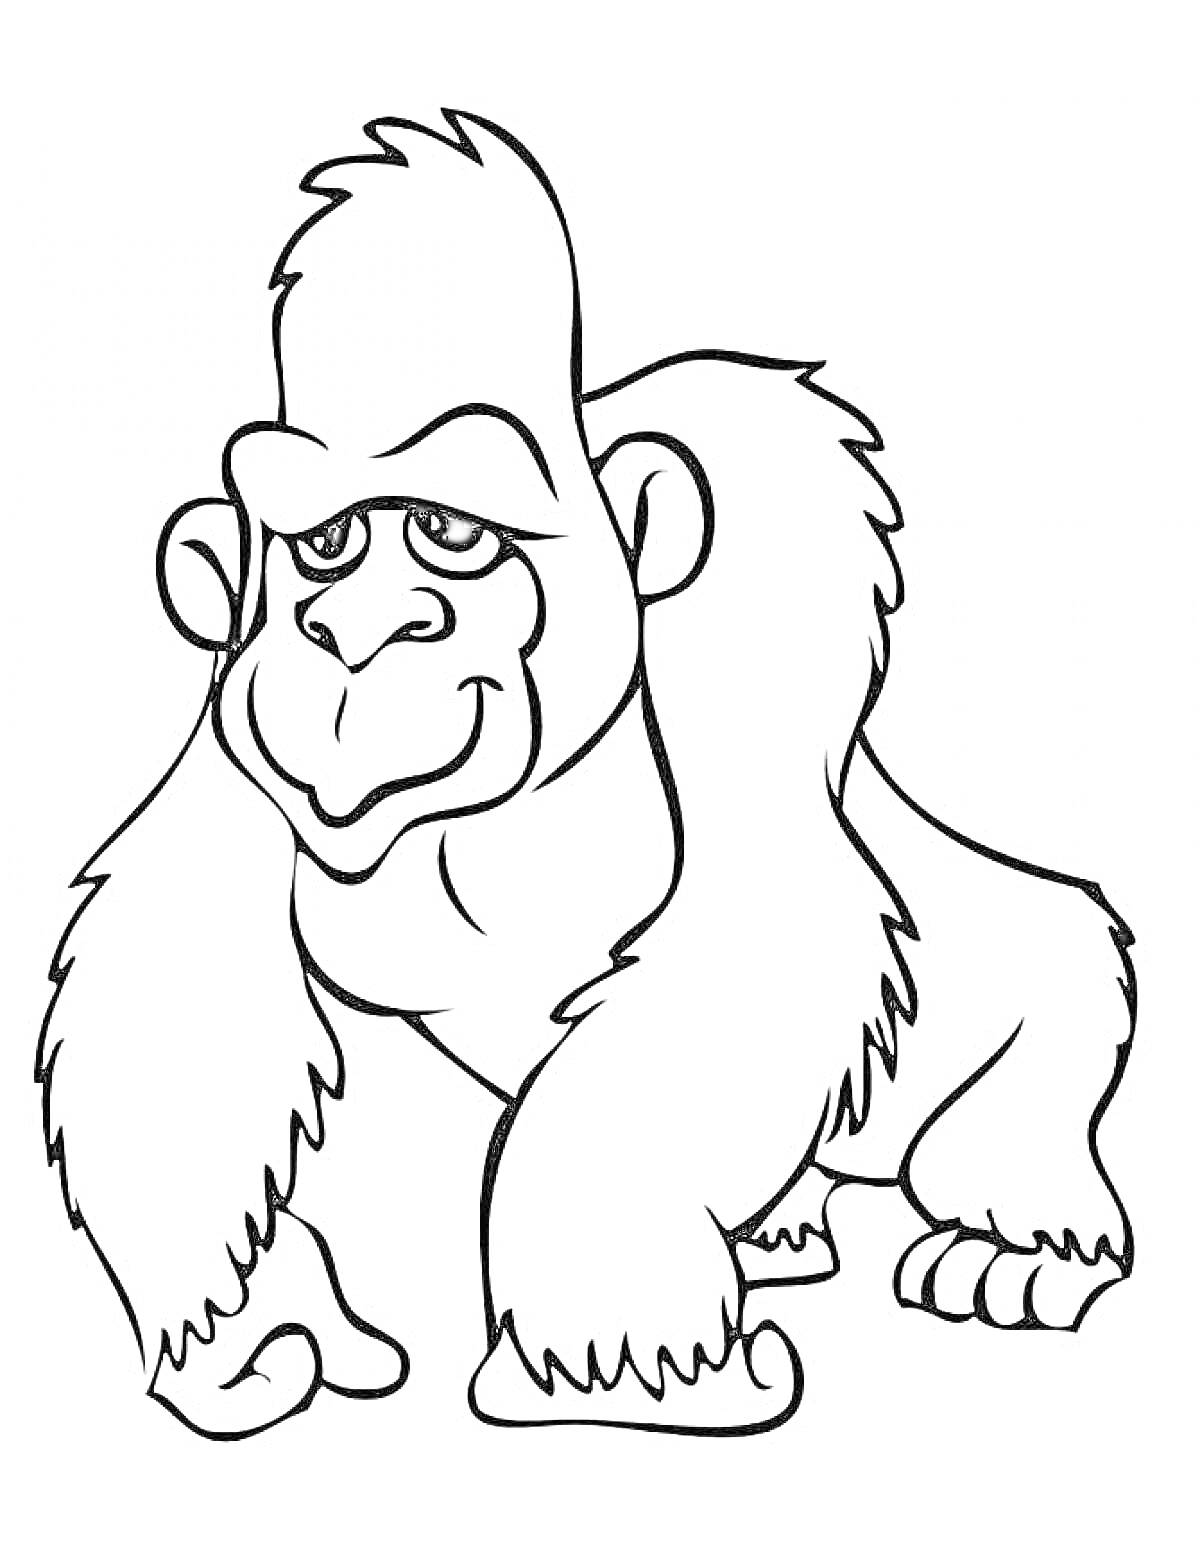 Раскраска Горилла (обезьяна) с добродушным выражением лица